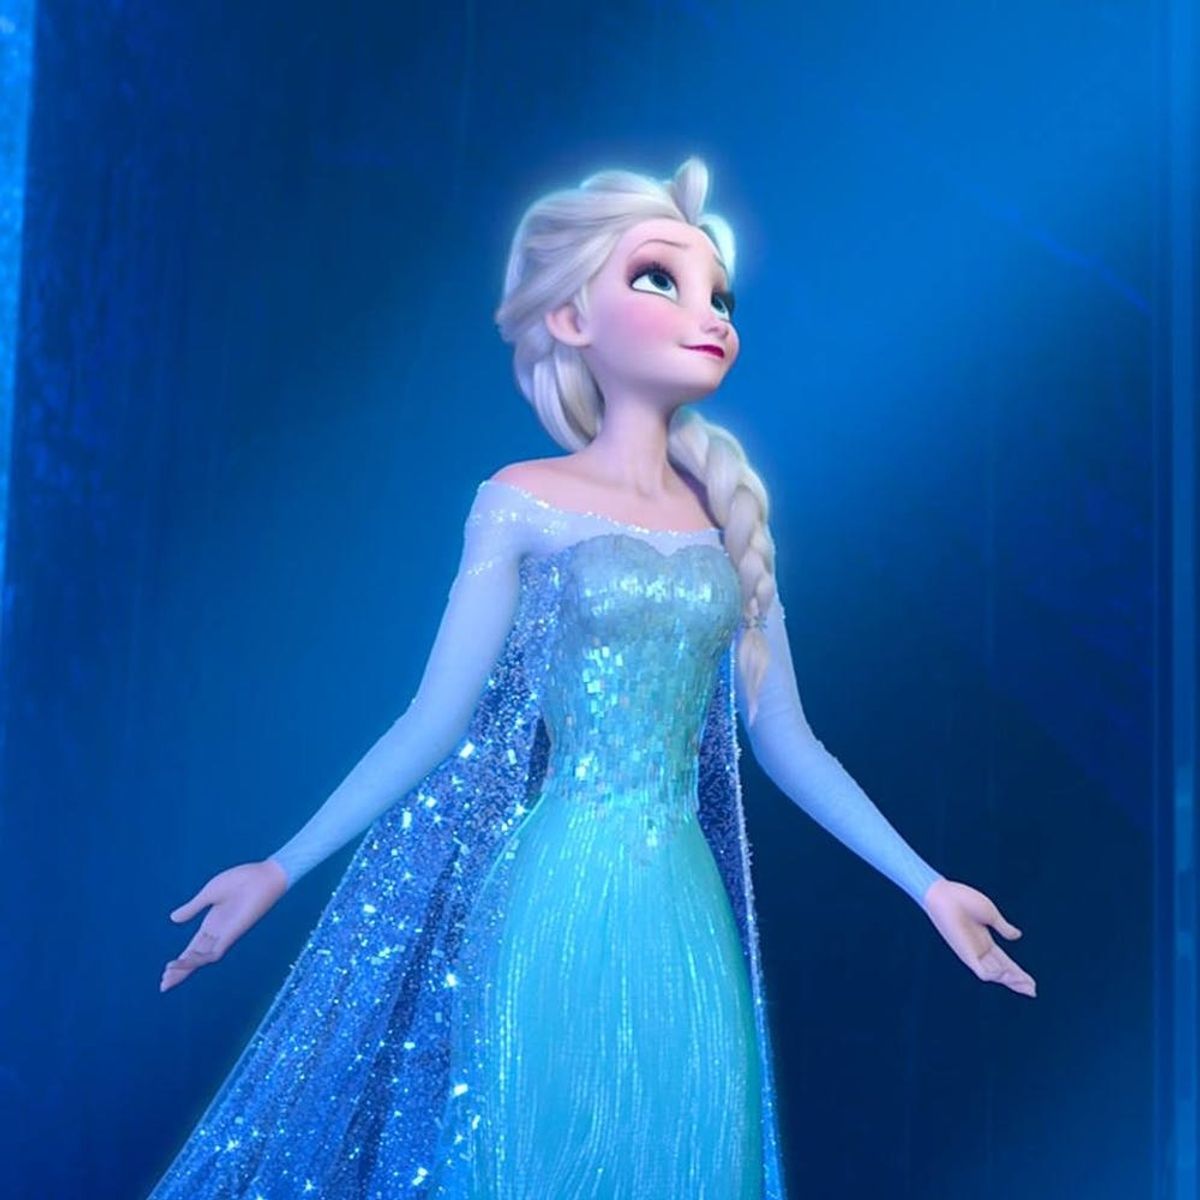 These Frozen Fans Want Disney to #GiveElsaAGirlfriend